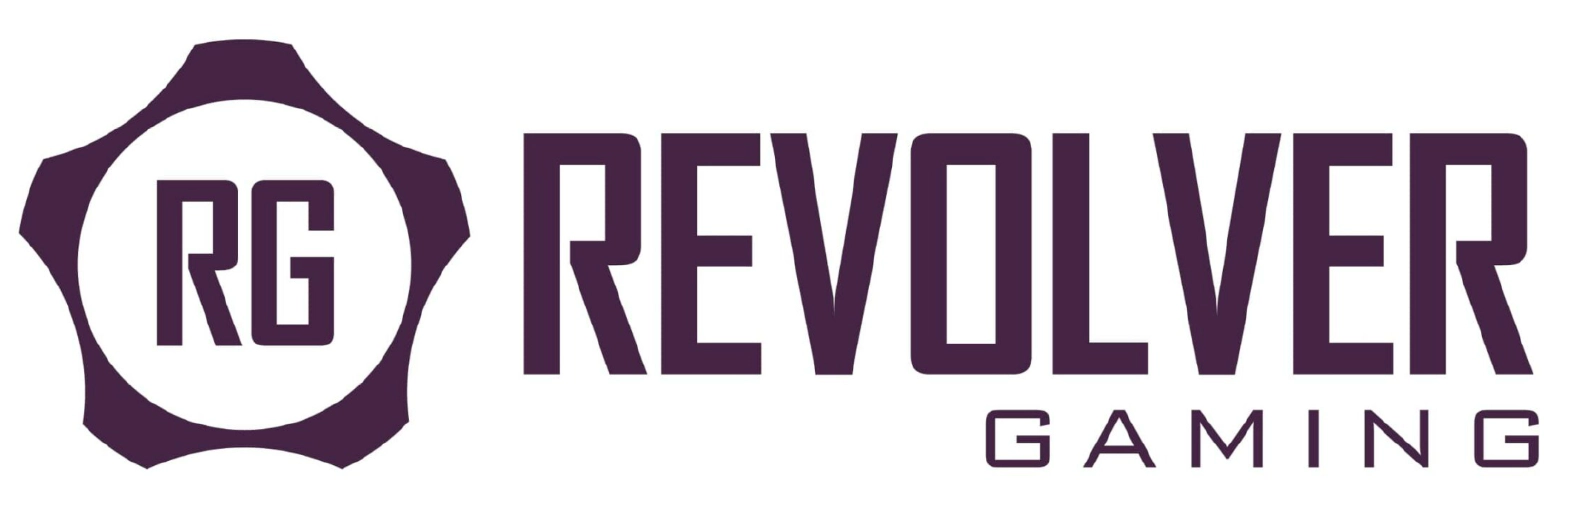 Revolver рдЧреЗрдорд┐рдВрдЧ рдкреНрд░рджрд╛рддрд╛